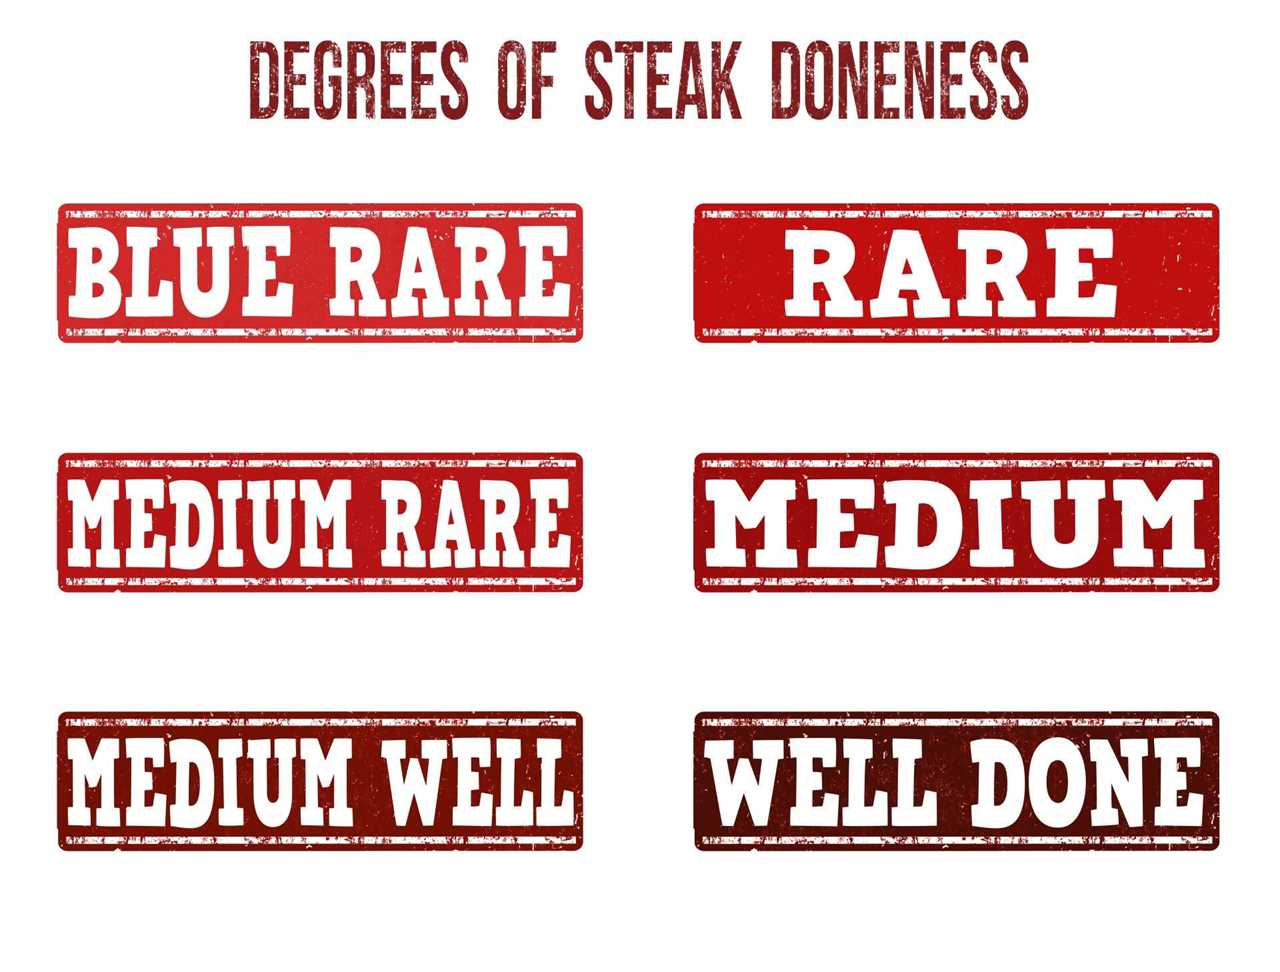 steak doneness